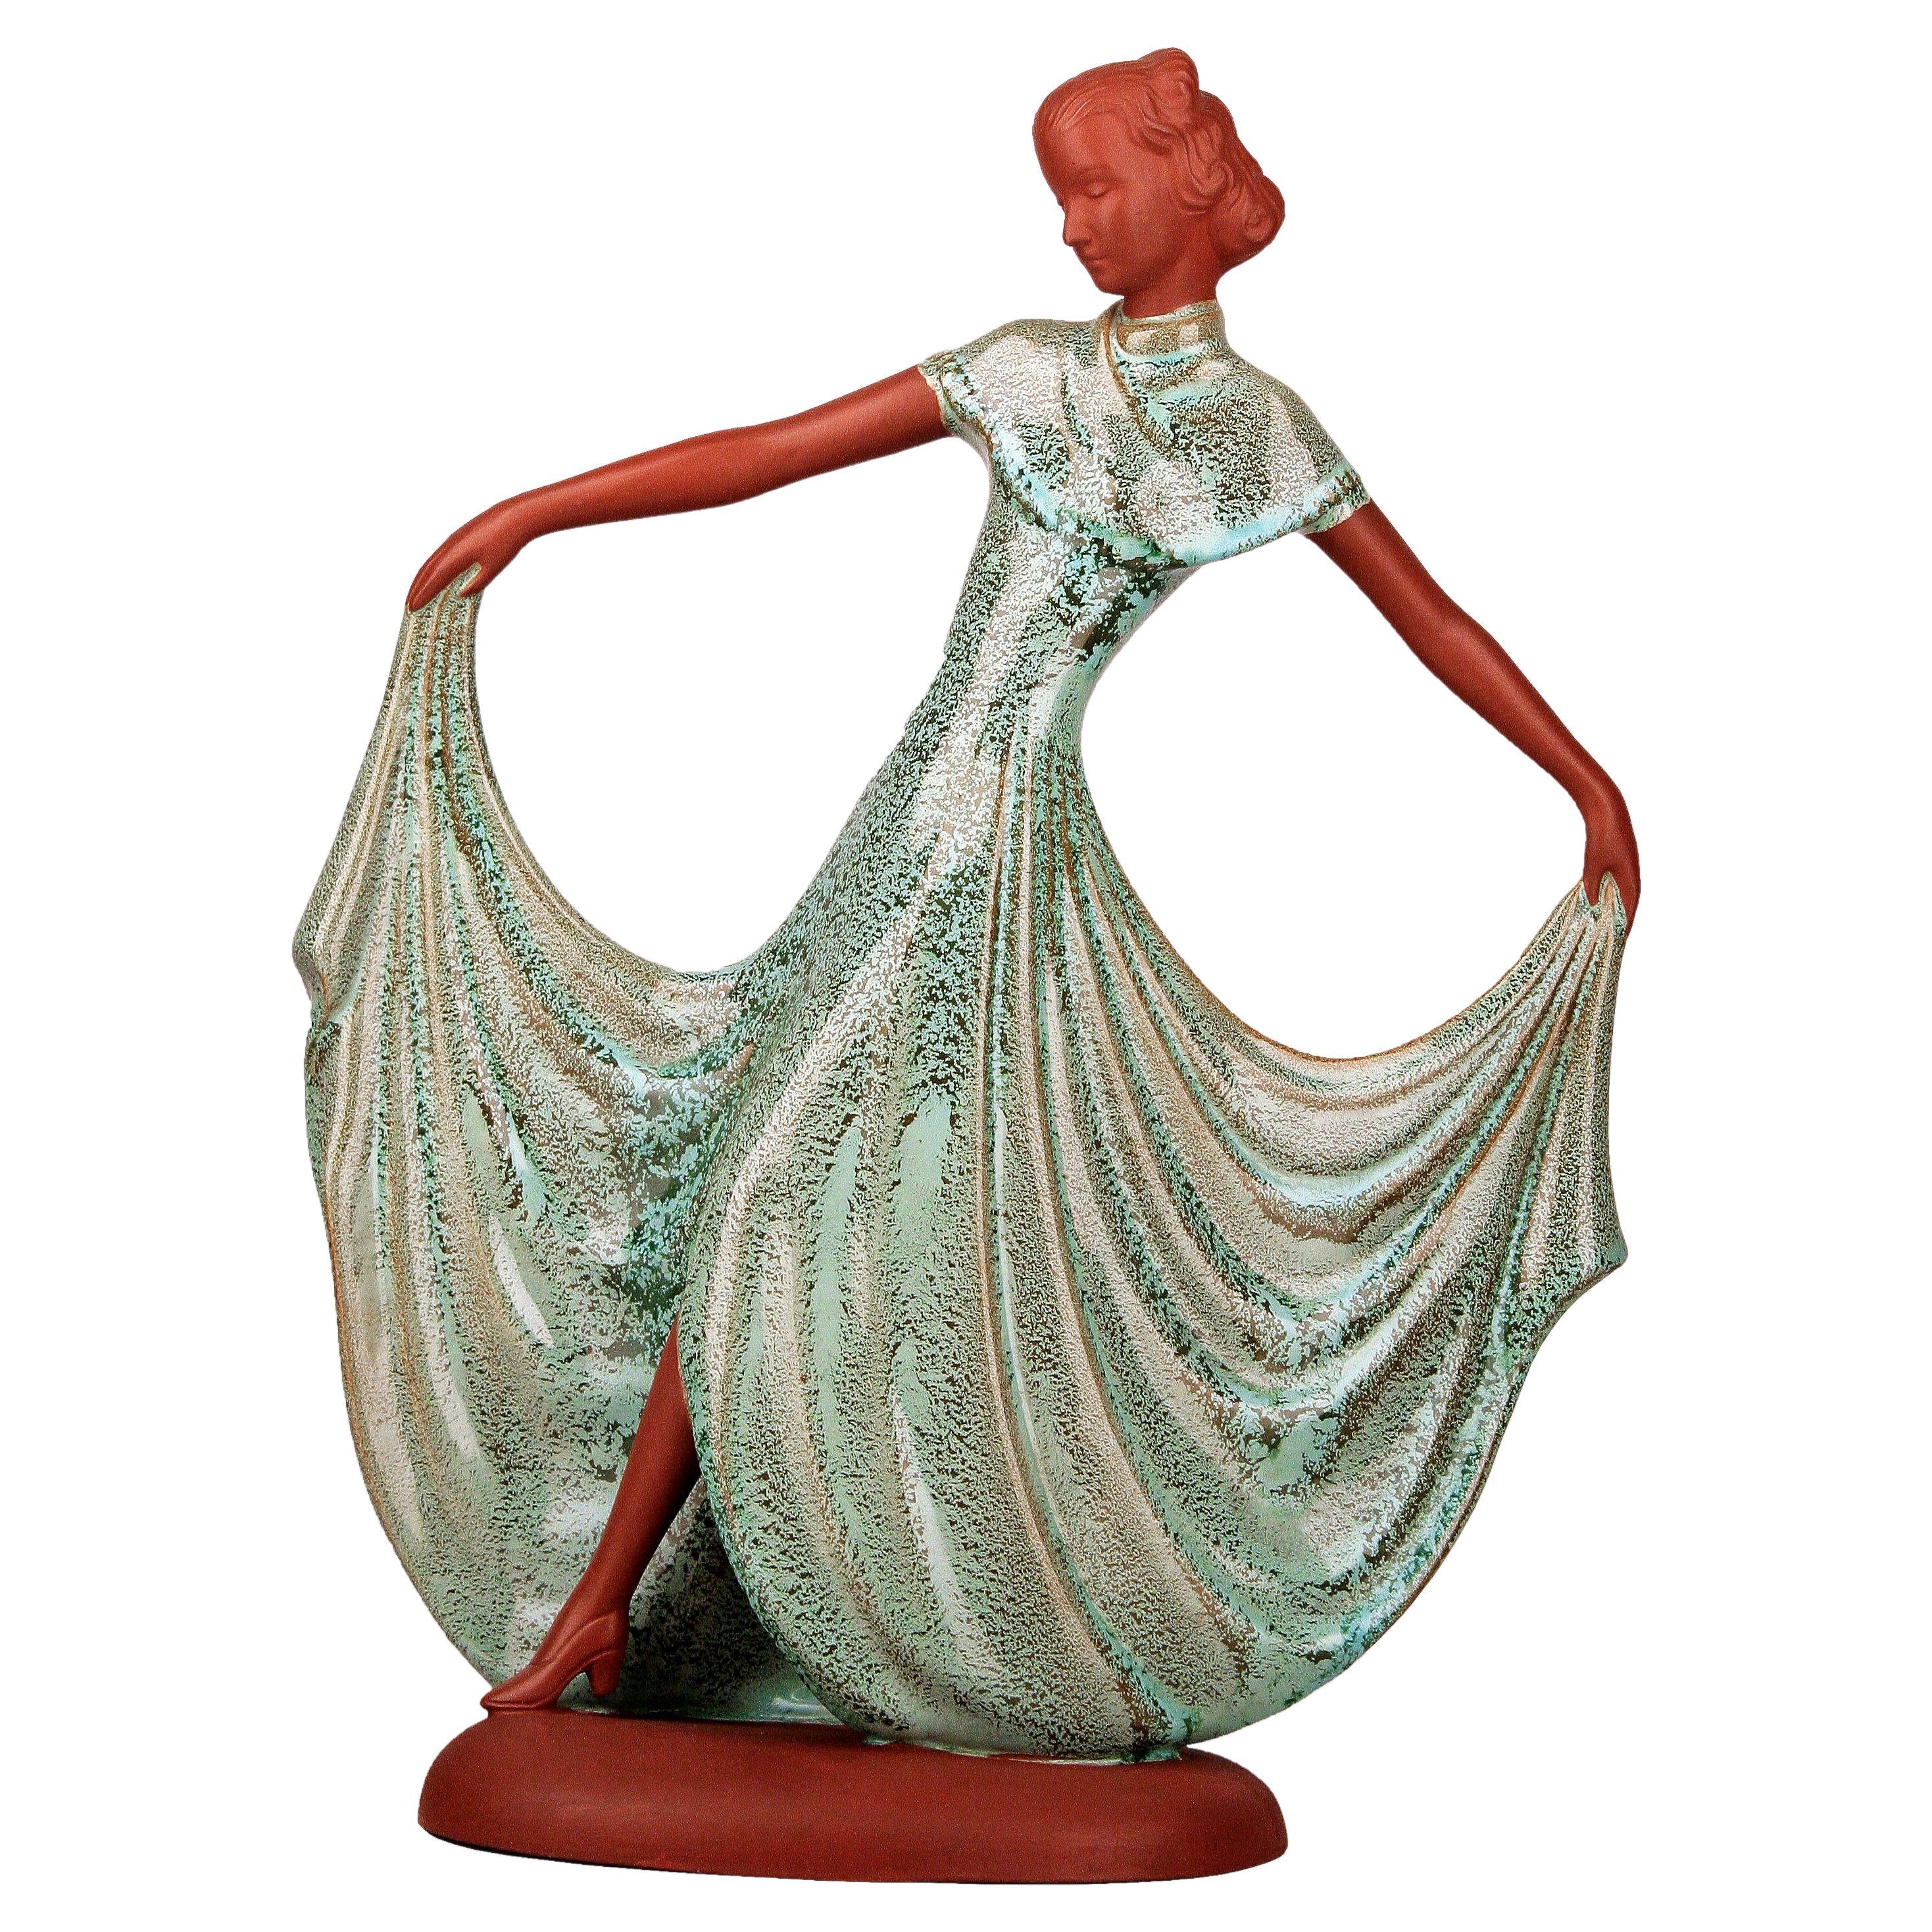 Goldscheider-ähnliche Art Déco Dancing Lady Porzellanfigur aus dem Vereinigten Königreich